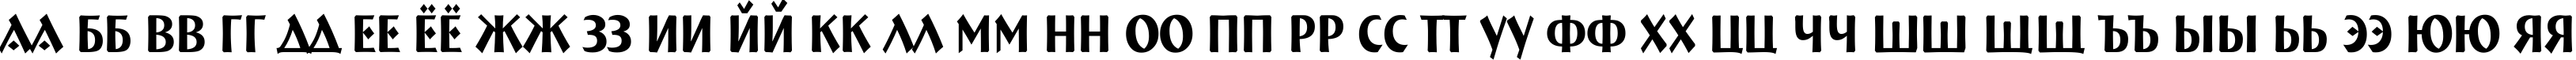 Пример написания русского алфавита шрифтом a_BremenNr